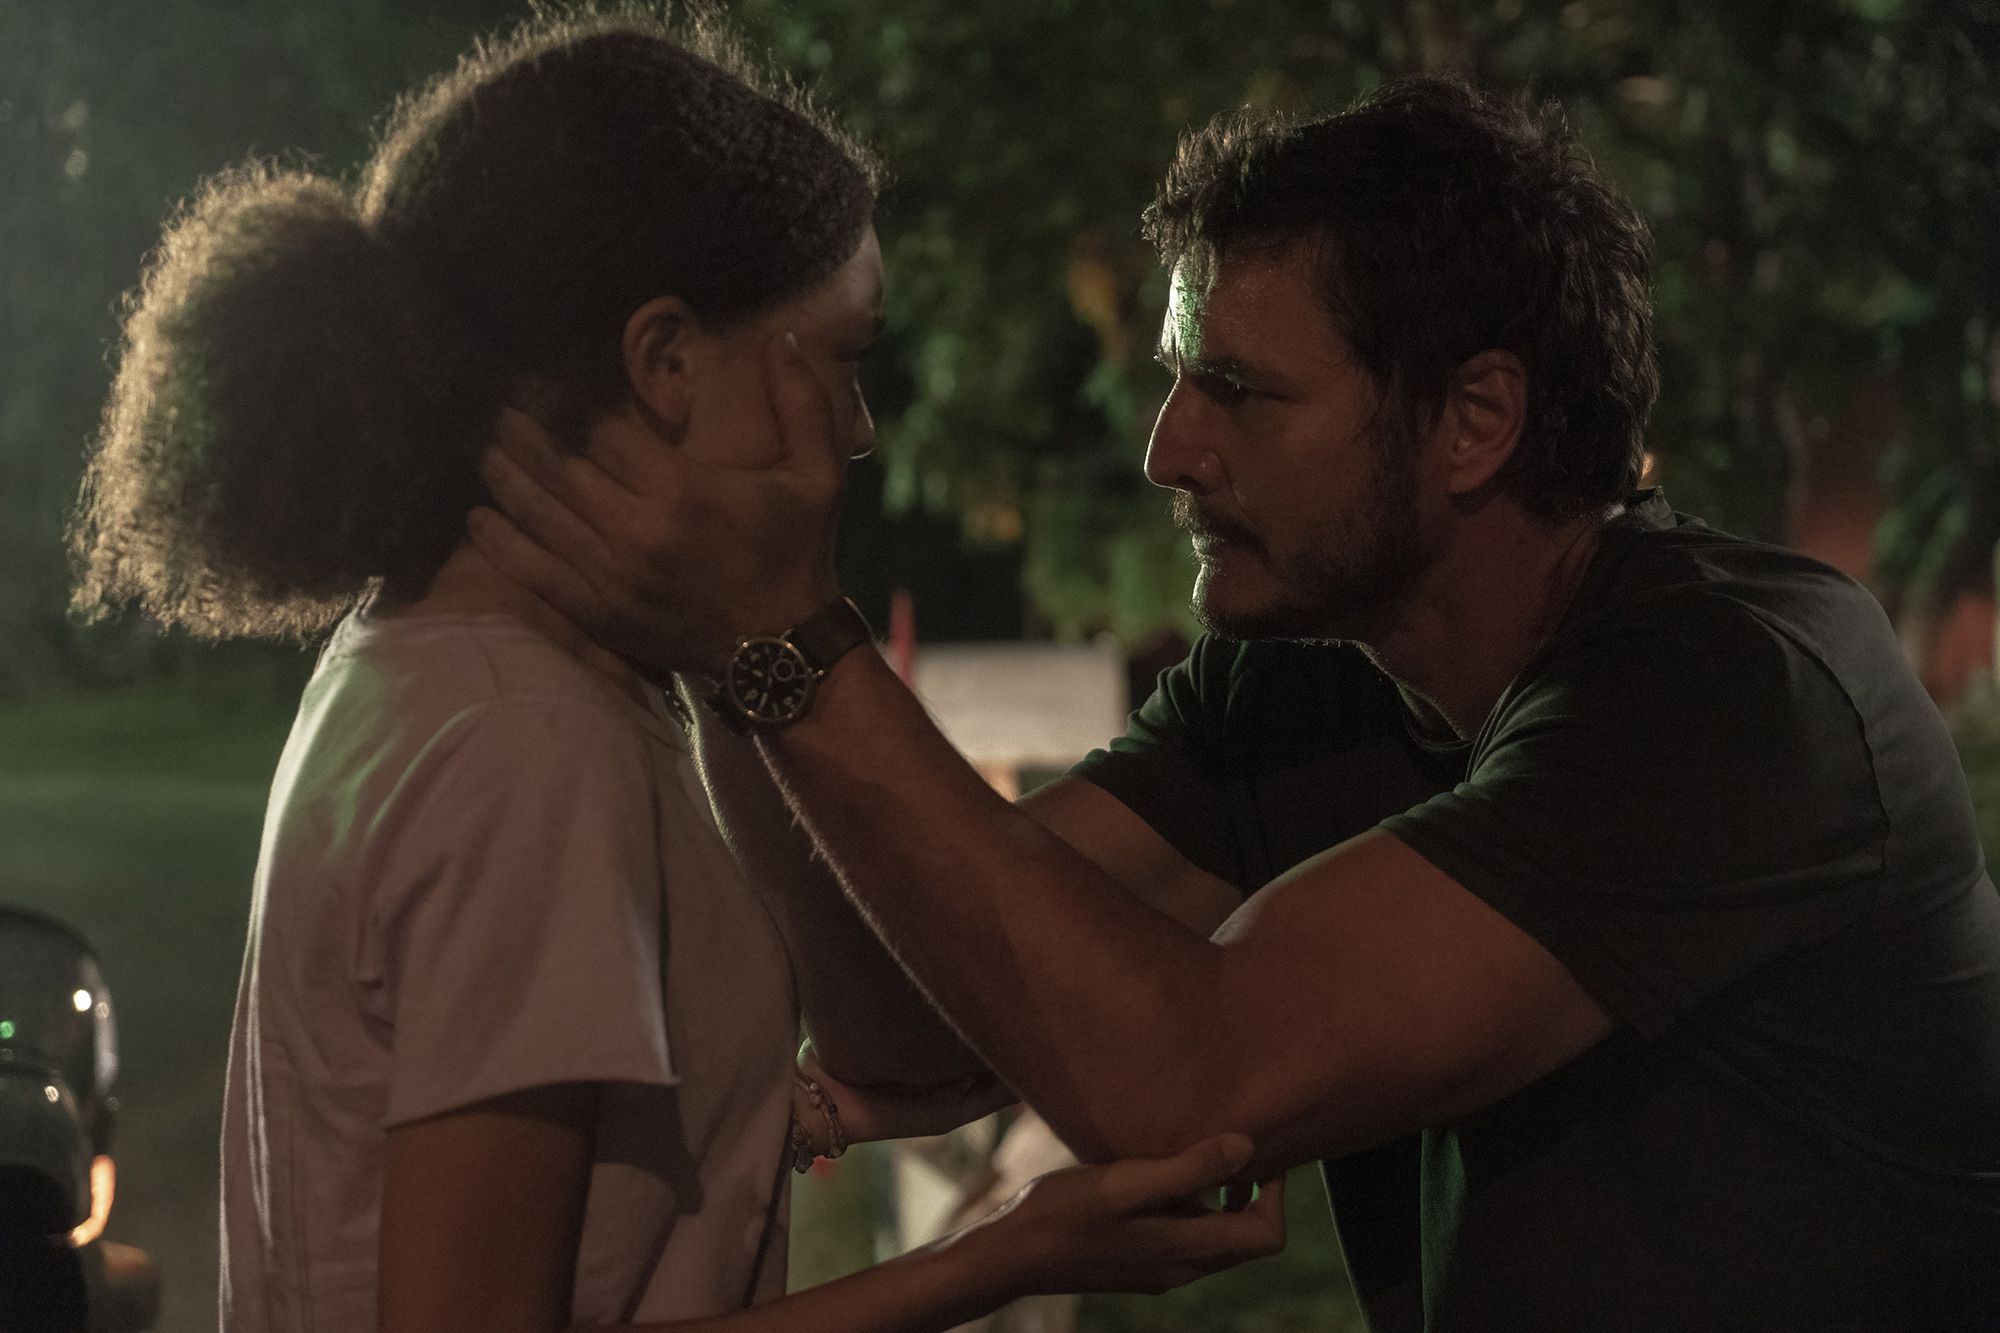 The Last of Us: arrasa-quarteirão da HBO traz visão original do Apocalipse